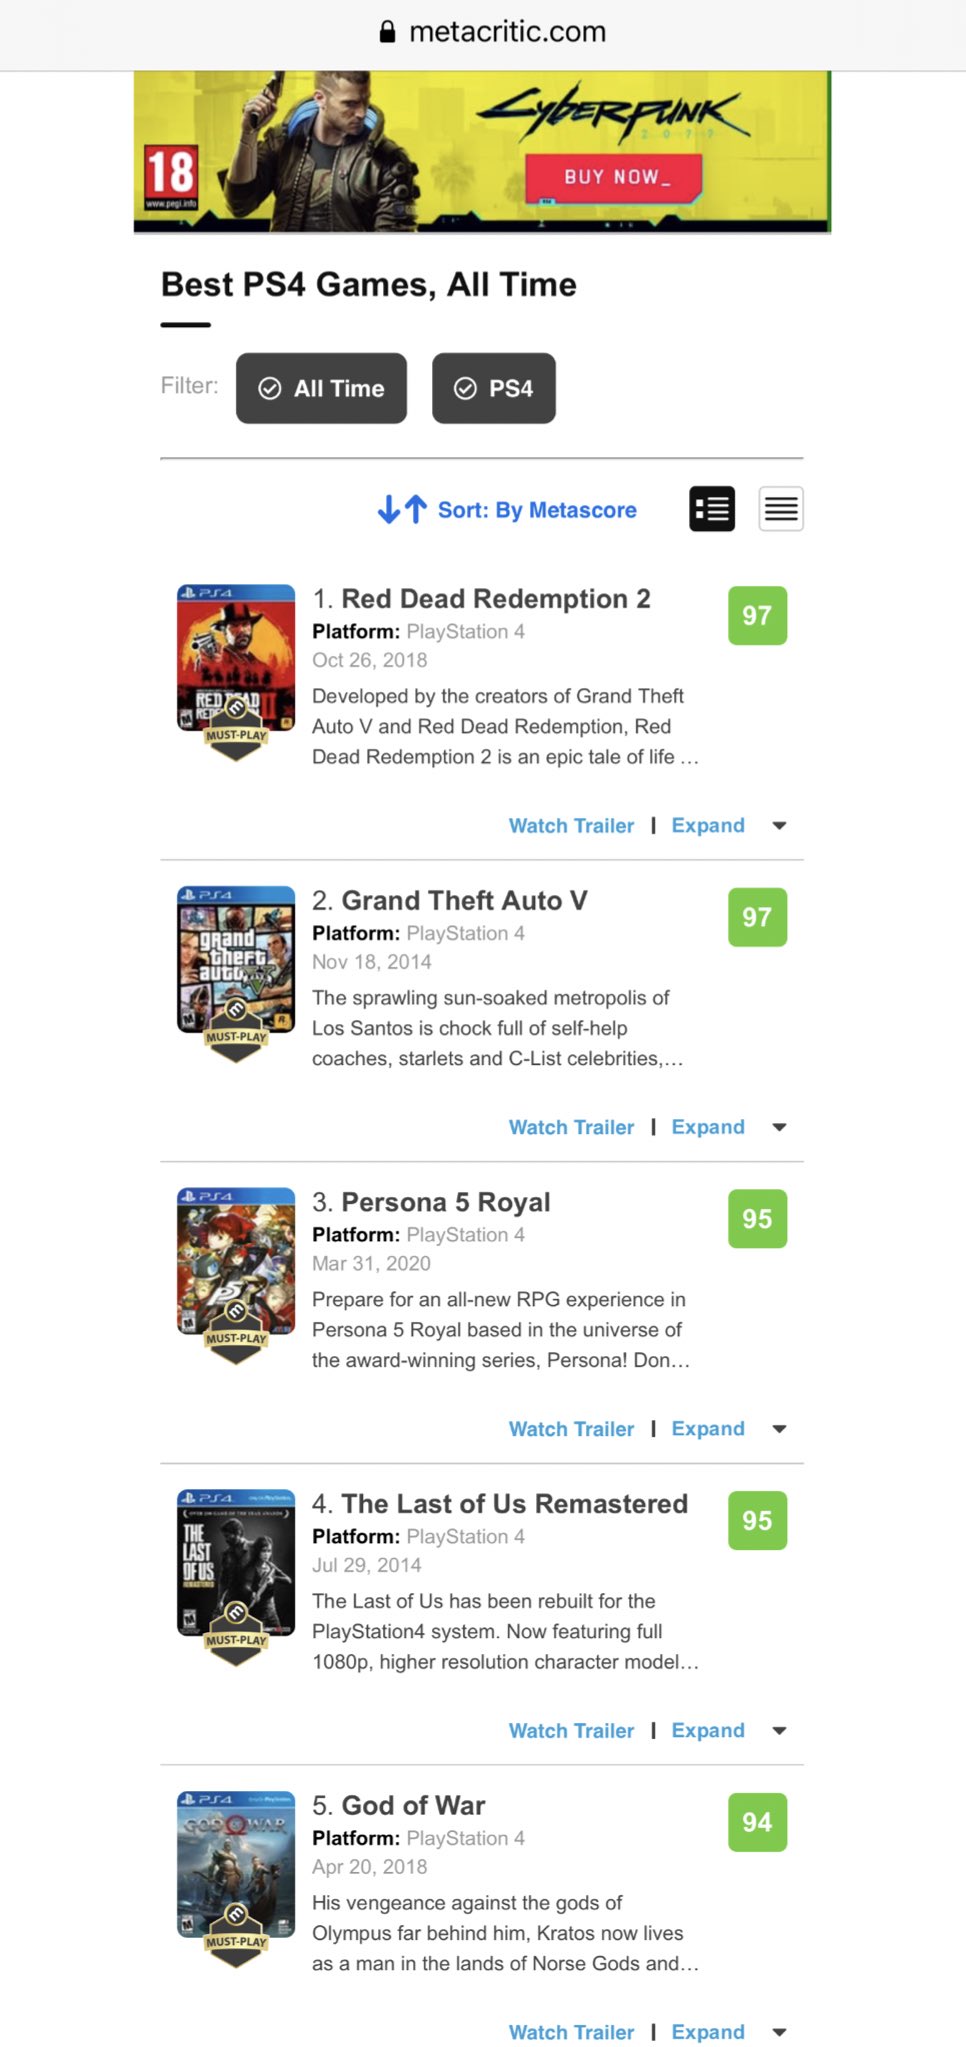 Bortset Tænke apotek Play ▷ tv PS5 vr🎵 on Twitter: "Metacritic's Best PS4 Games of All Time  https://t.co/Sl3UiM9eOZ https://t.co/a2KD4SC3kK" / Twitter